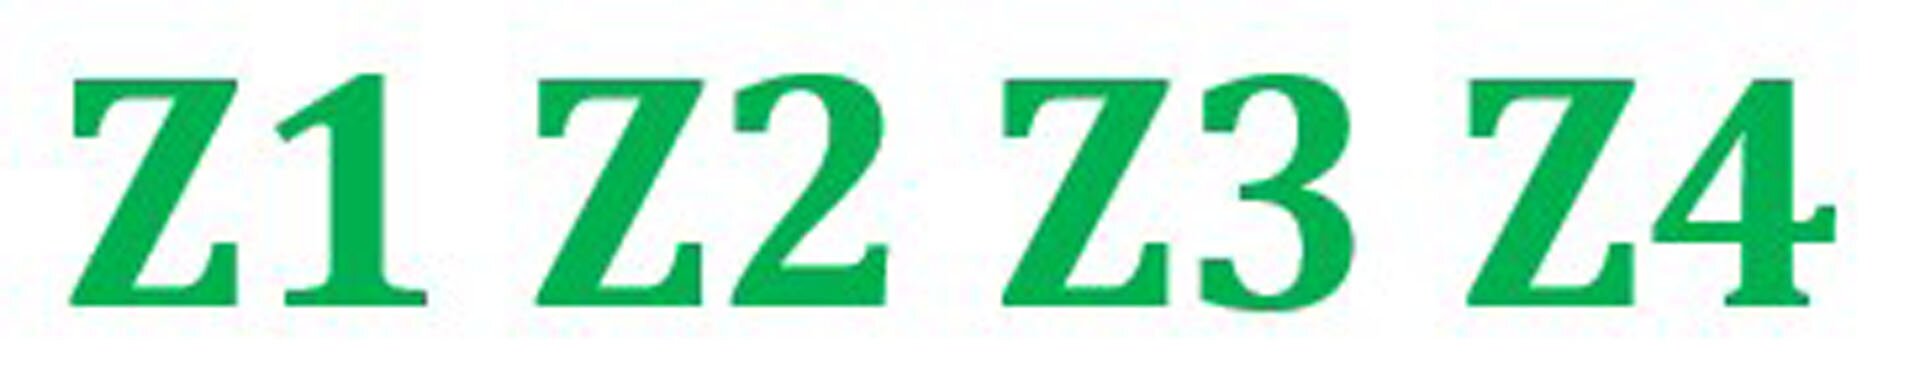 Ilustracja przedstawia schemat formy zwrotkowej bez refrenu. Zwrotki przedstawiono za pomocą liter Z z kolejnymi cyframi. Forma wygląda tak Z1, Z2, Z3, Z4.